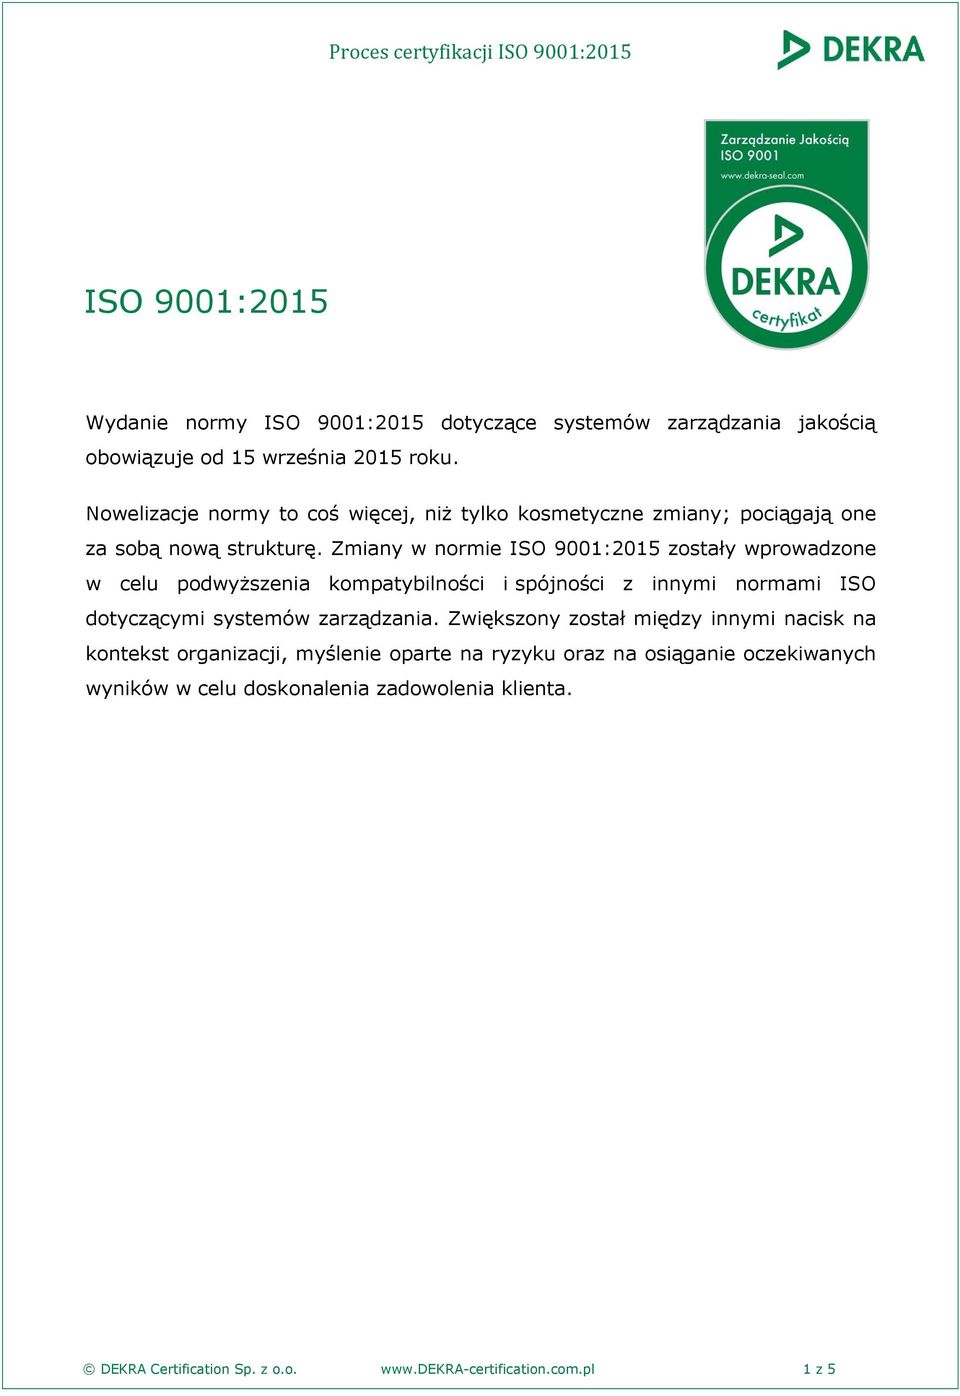 Zmiany w normie ISO 9001:2015 zostały wprowadzone w celu podwyższenia kompatybilności i spójności z innymi normami ISO dotyczącymi systemów zarządzania.